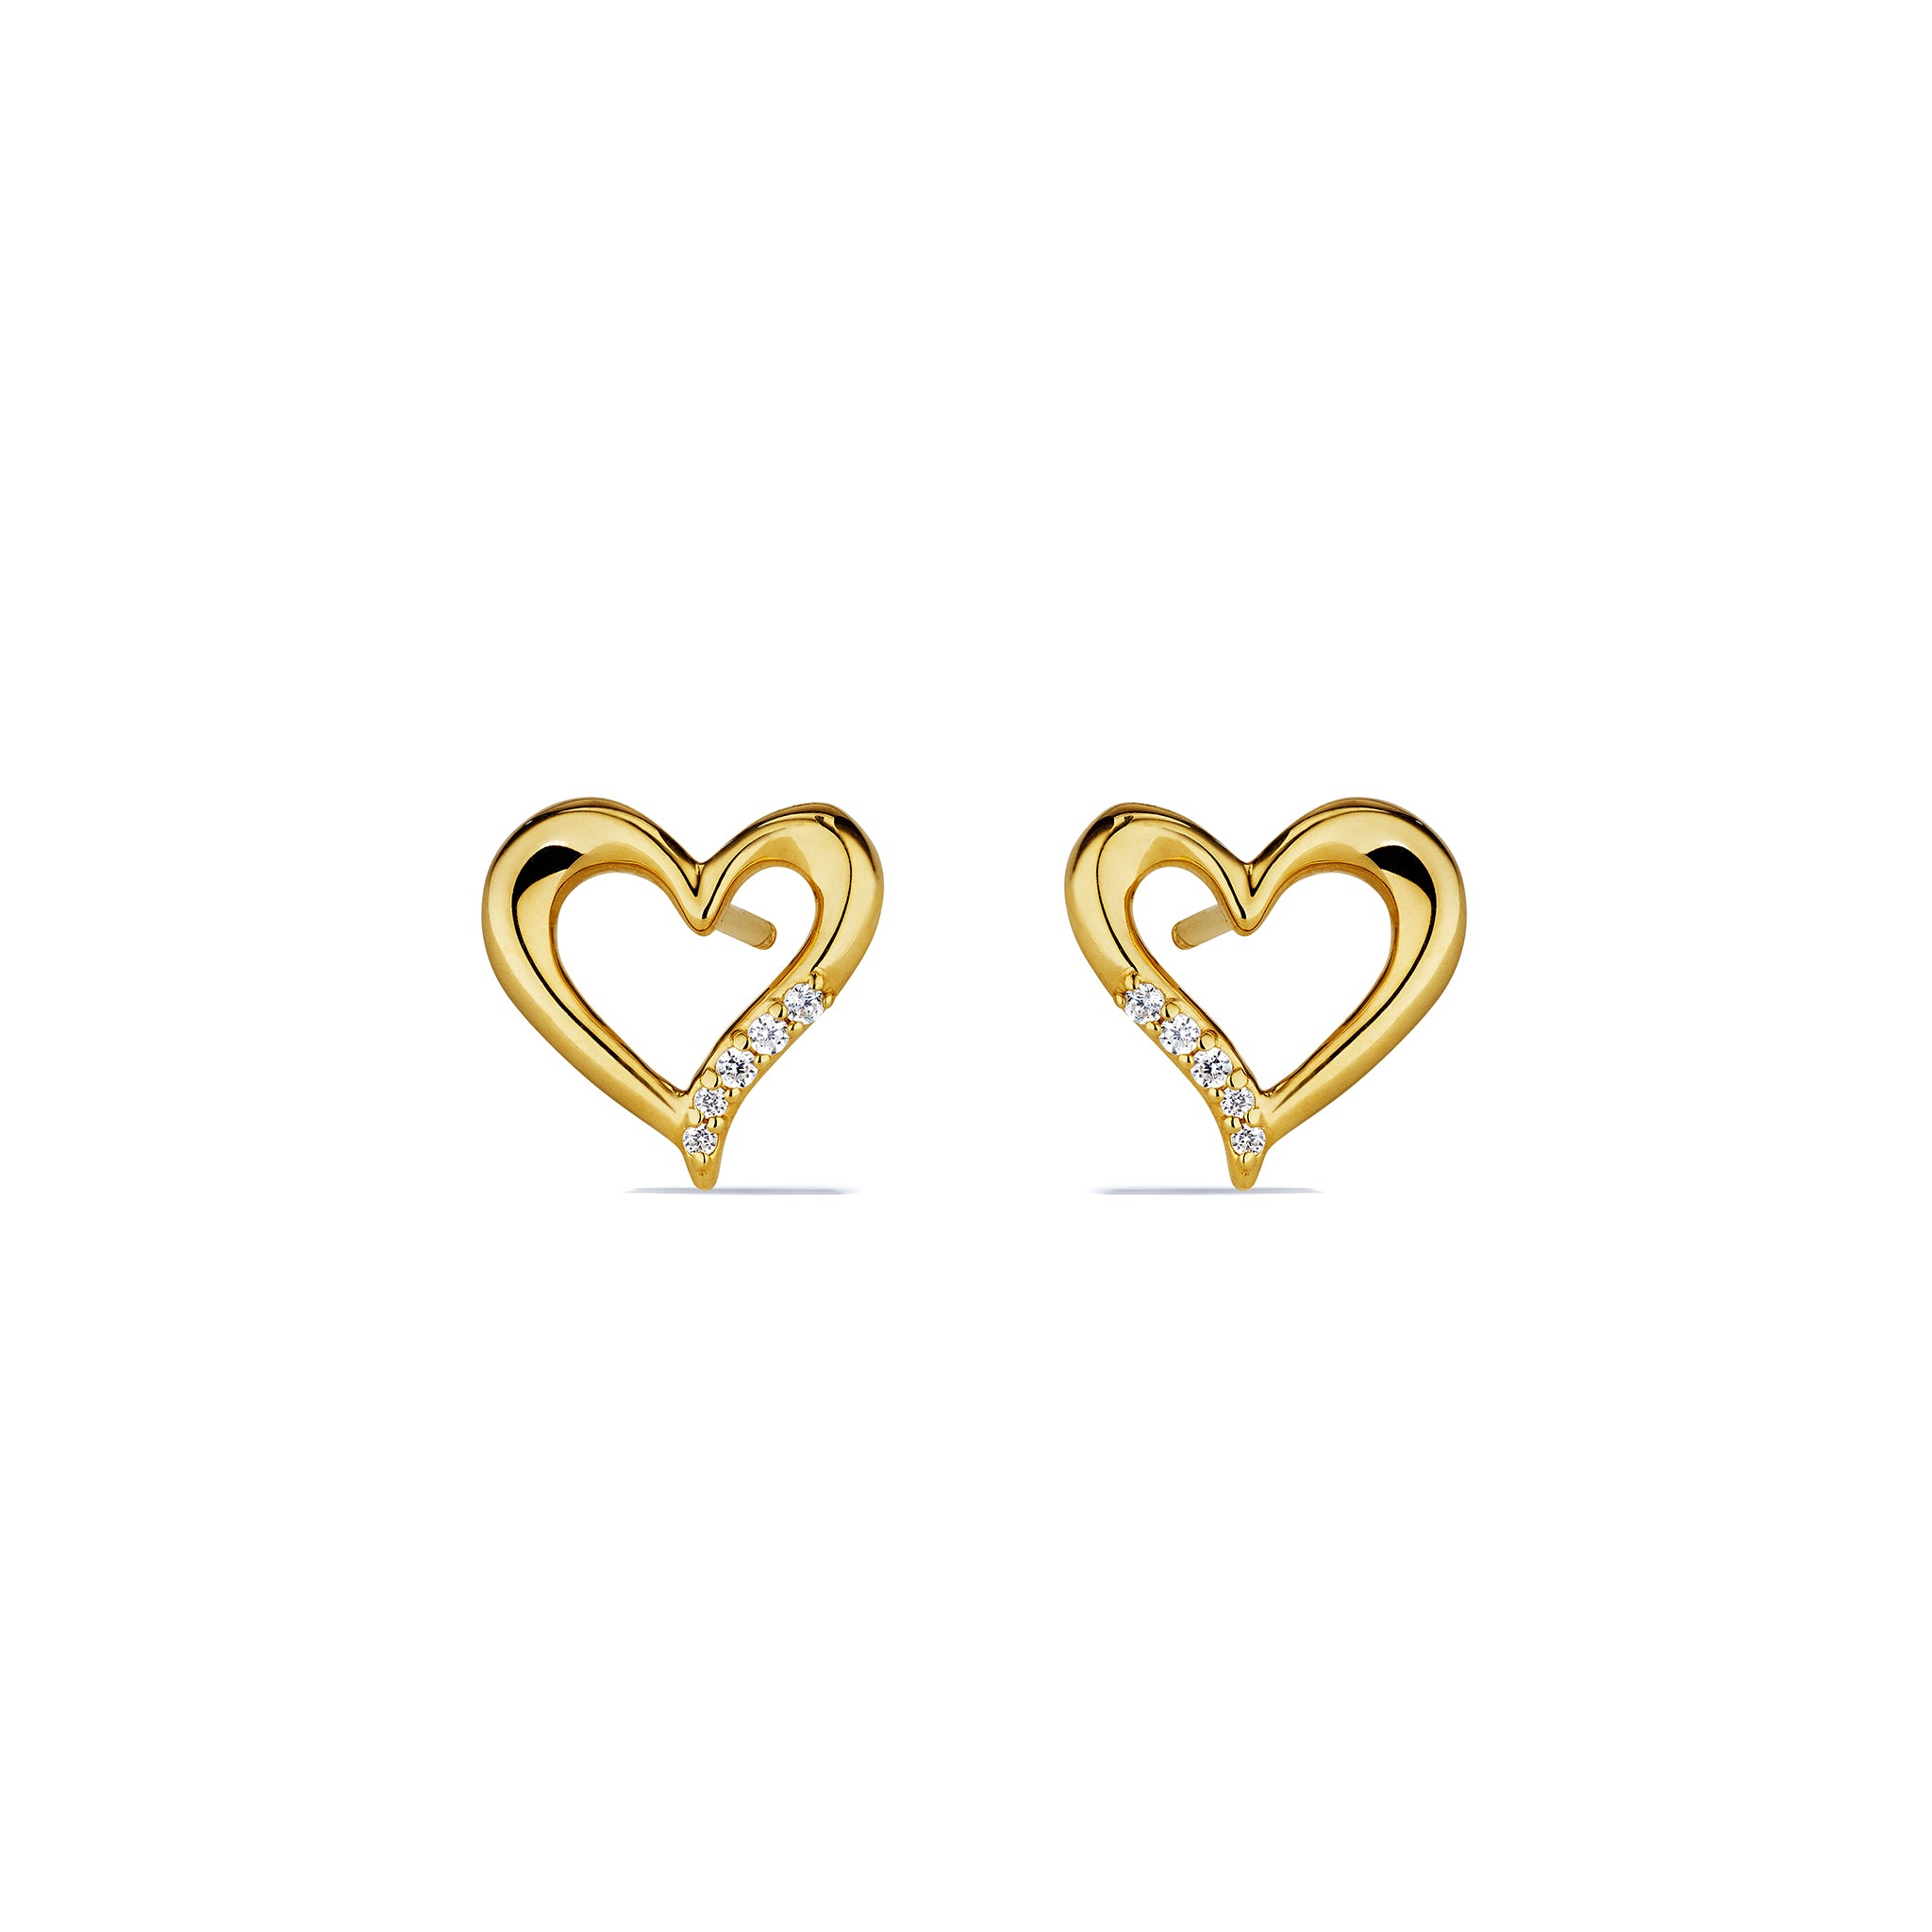 Eros Open Heart Stud Earrings with Diamonds in 18K